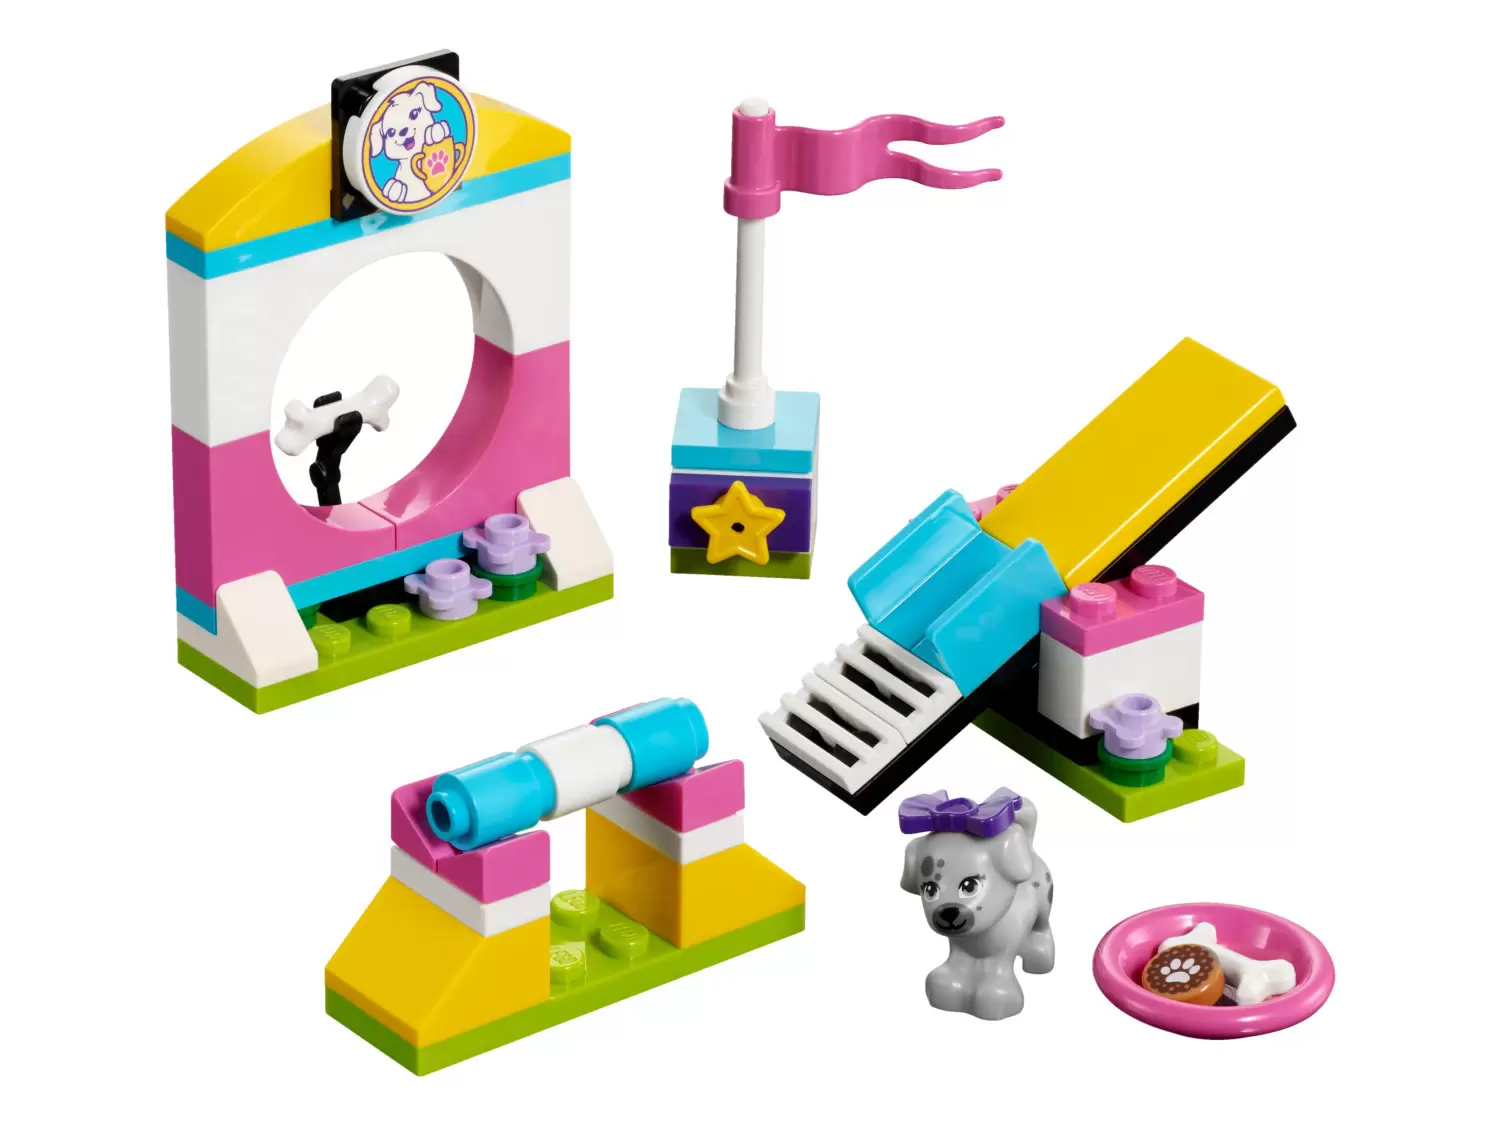 LEGO Friends - Puppy Playground